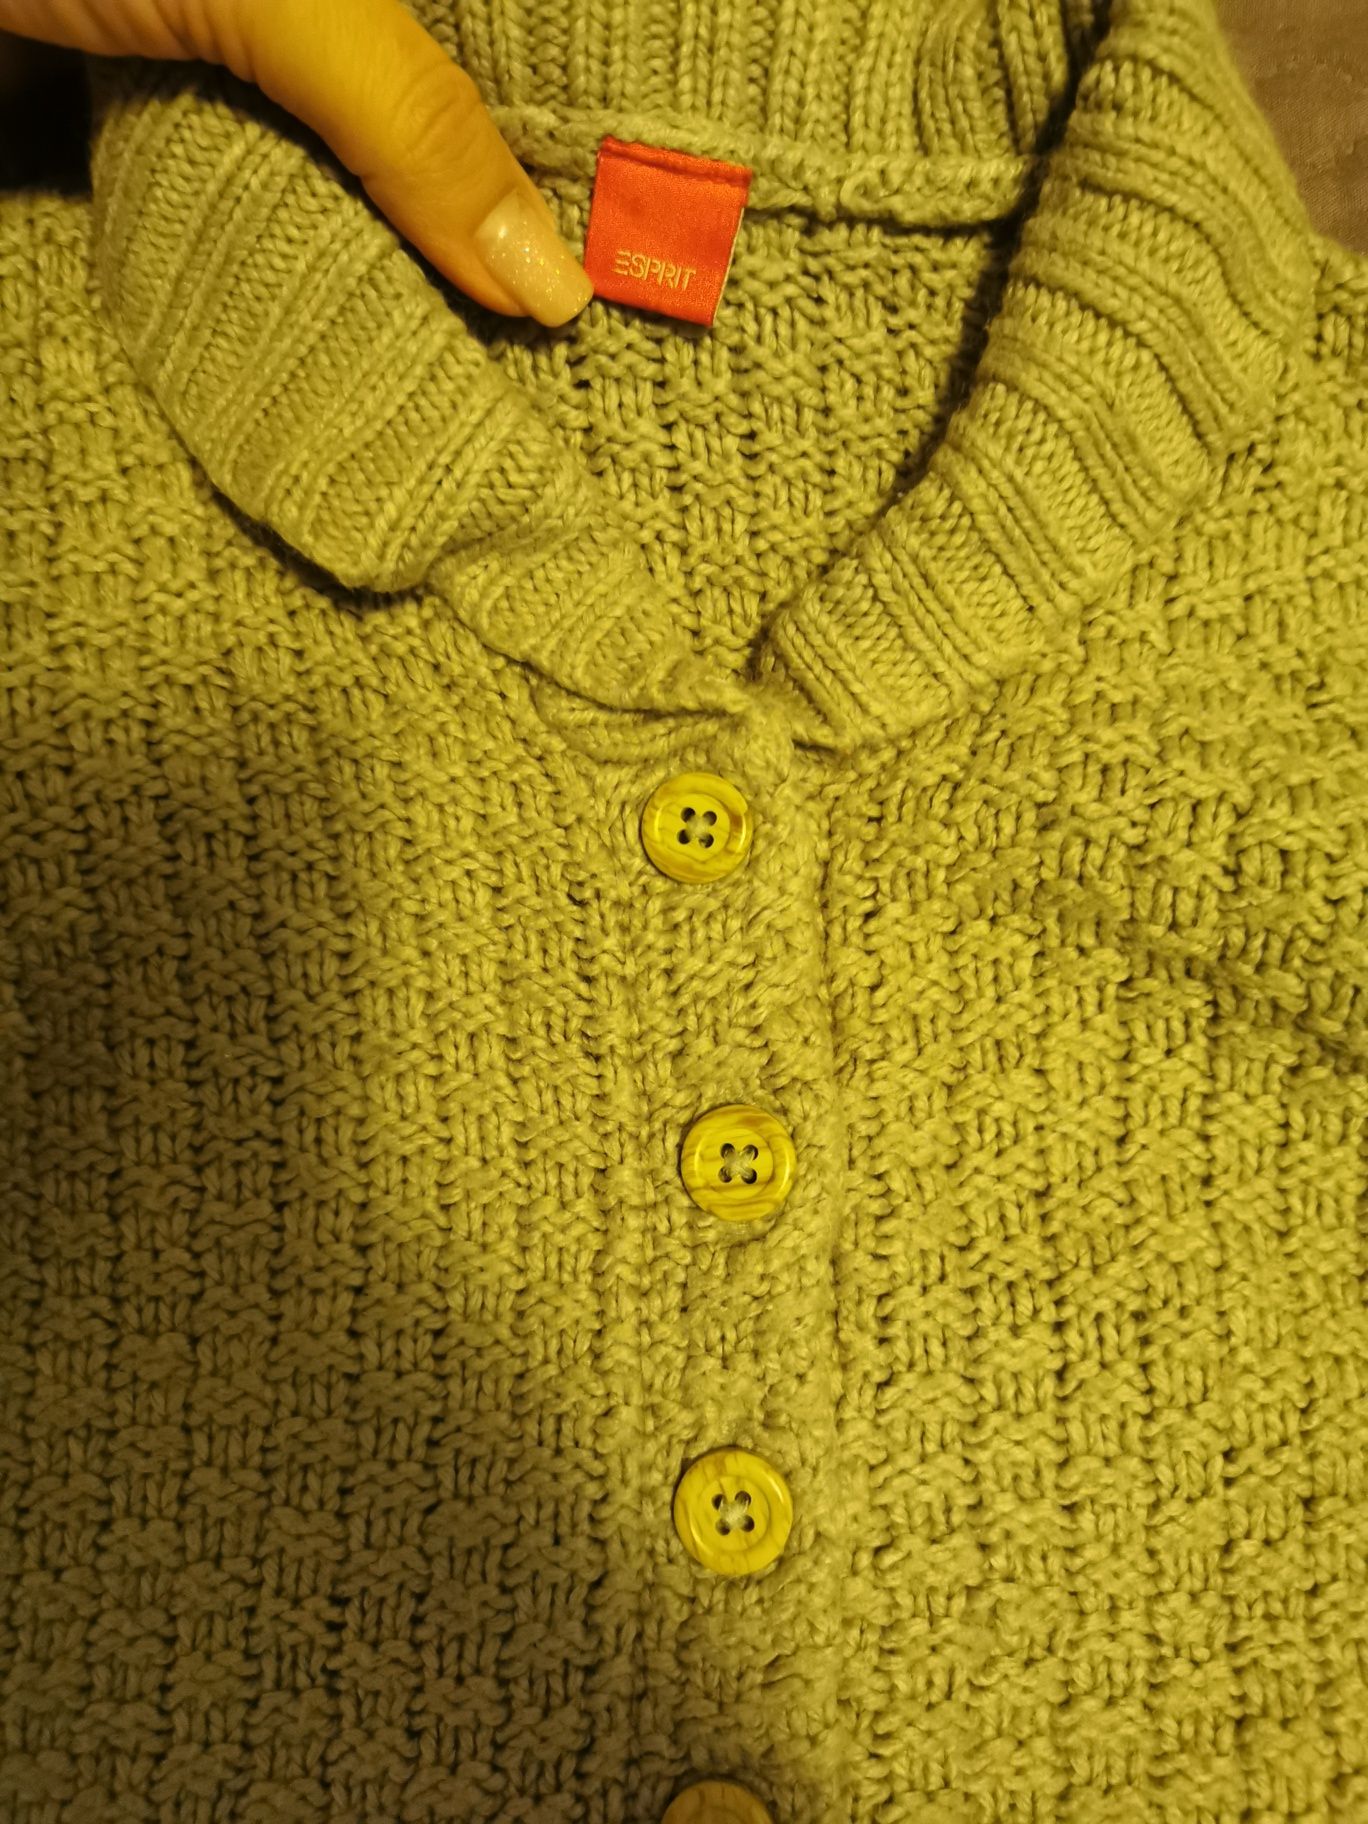 Bluza/pulover fetita Esprit 80(9-12 luni)